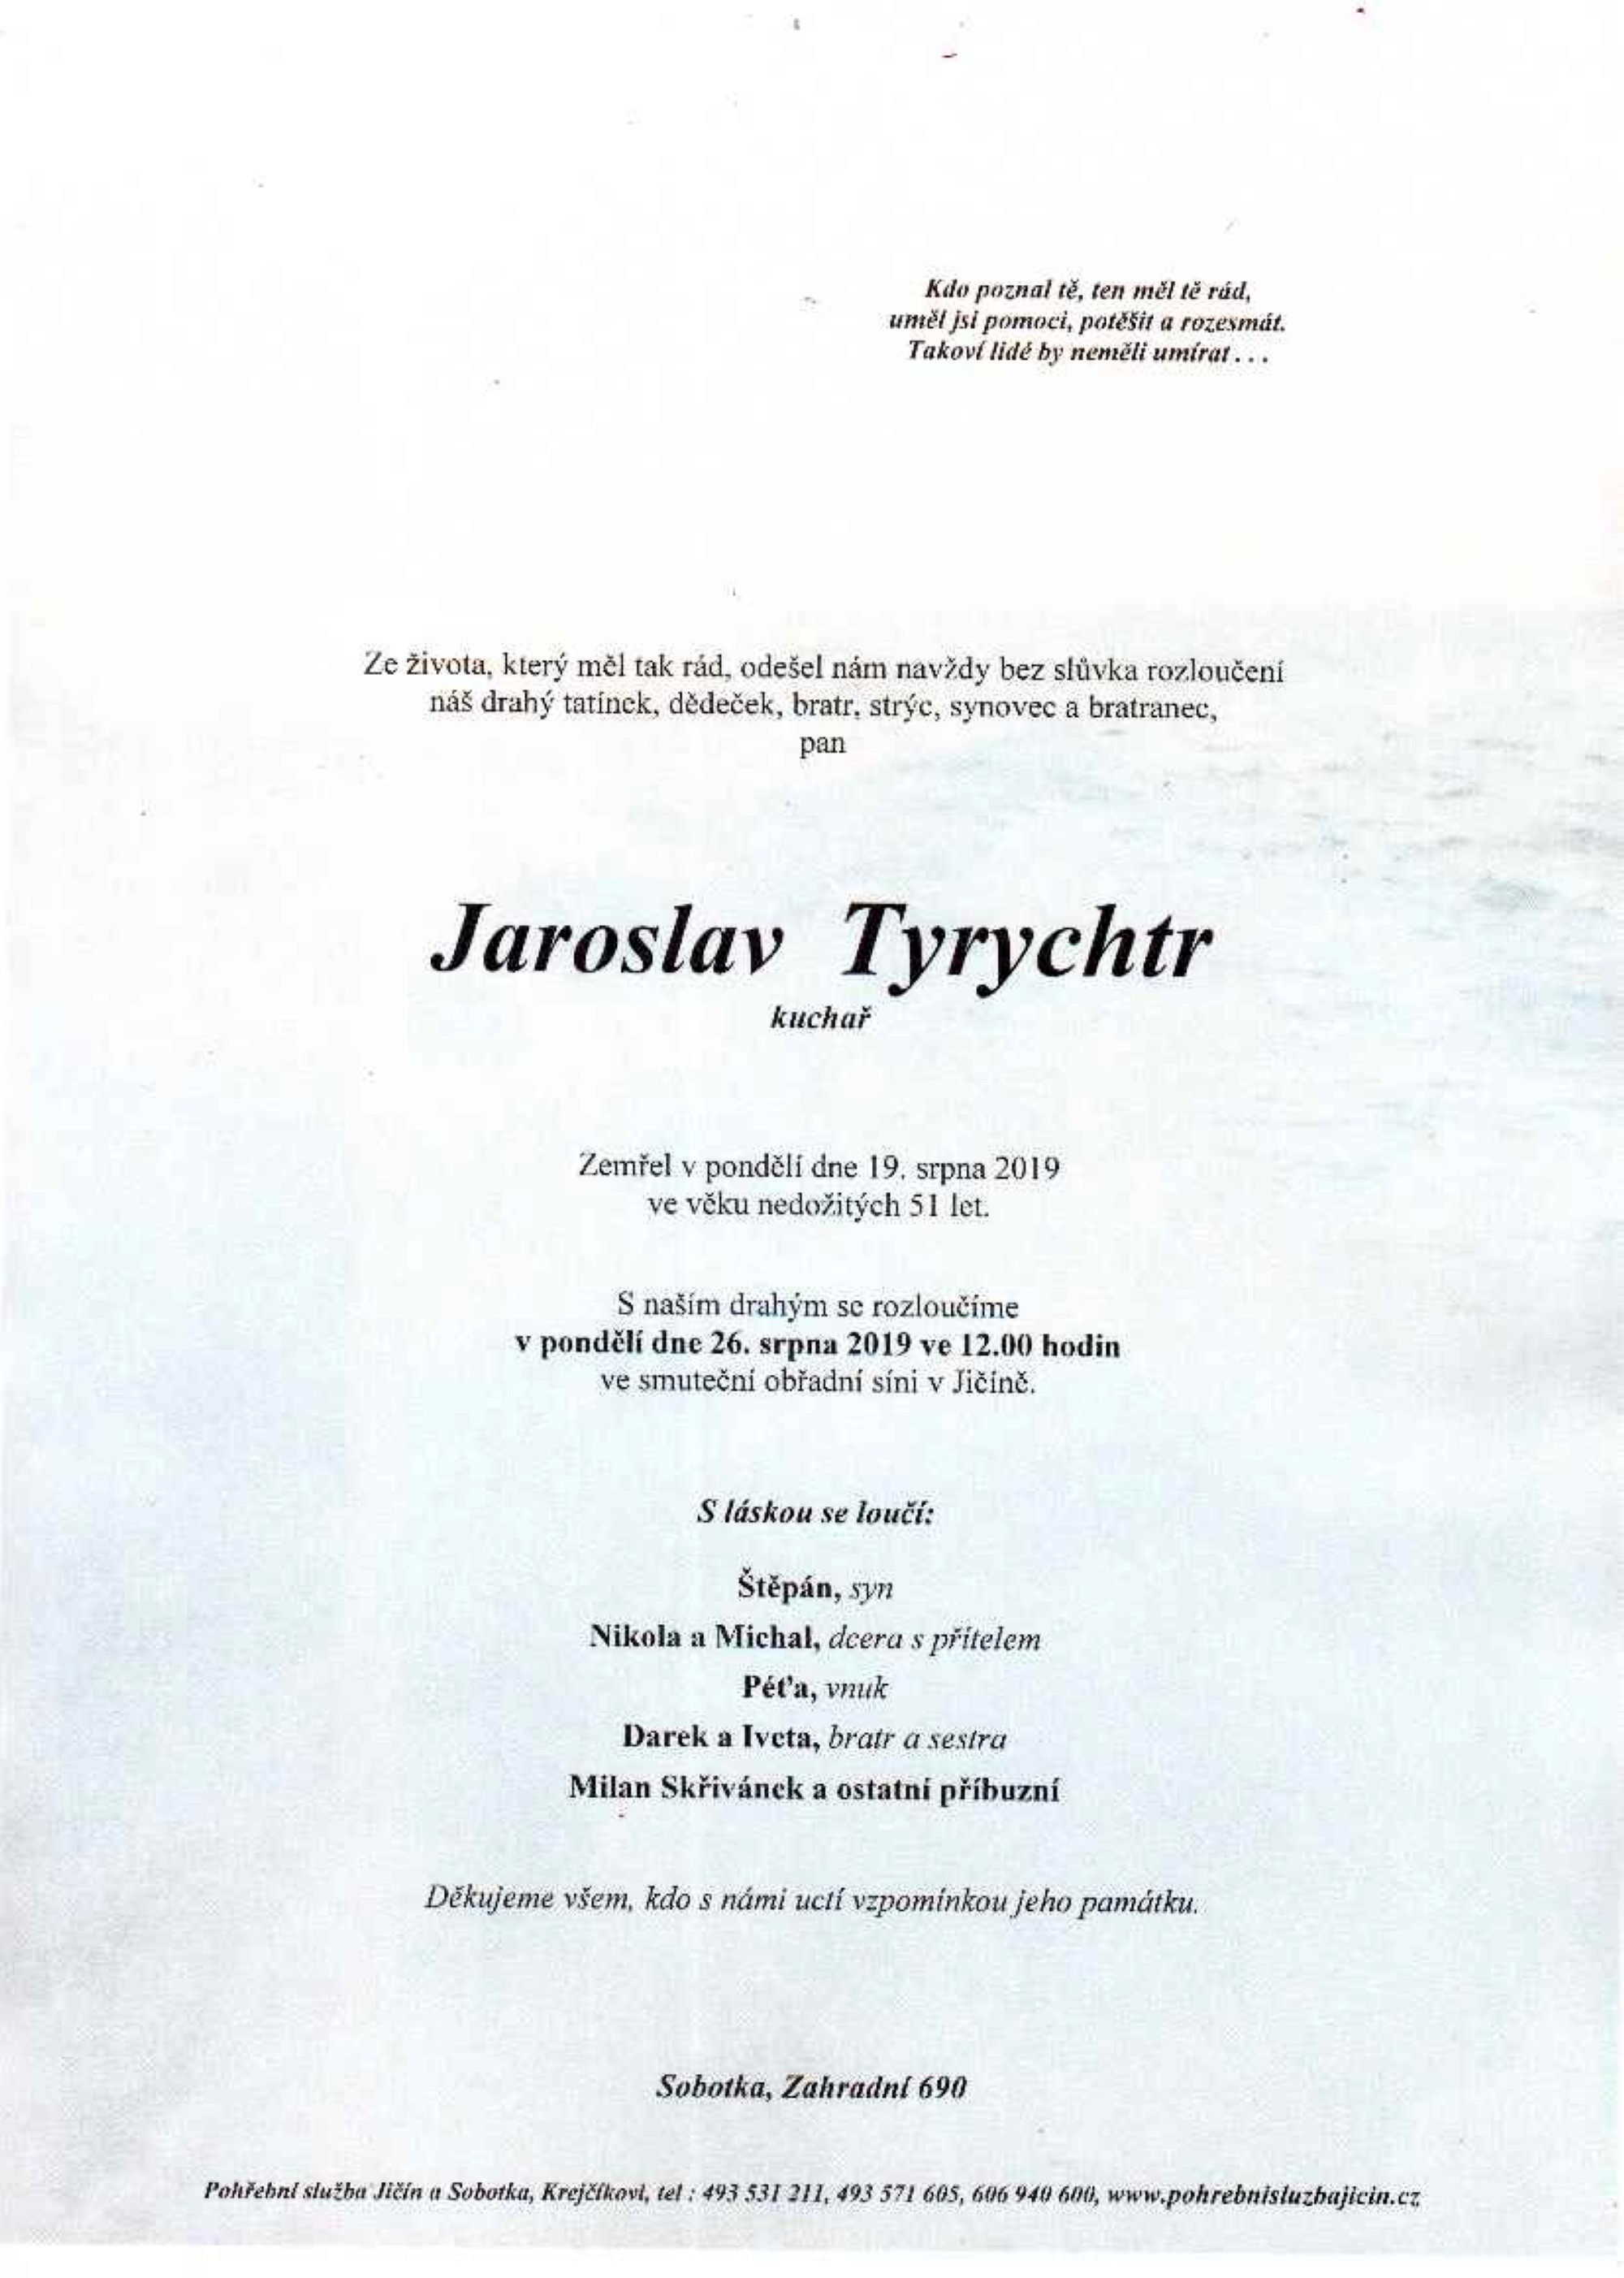 Jaroslav Tyrychtr